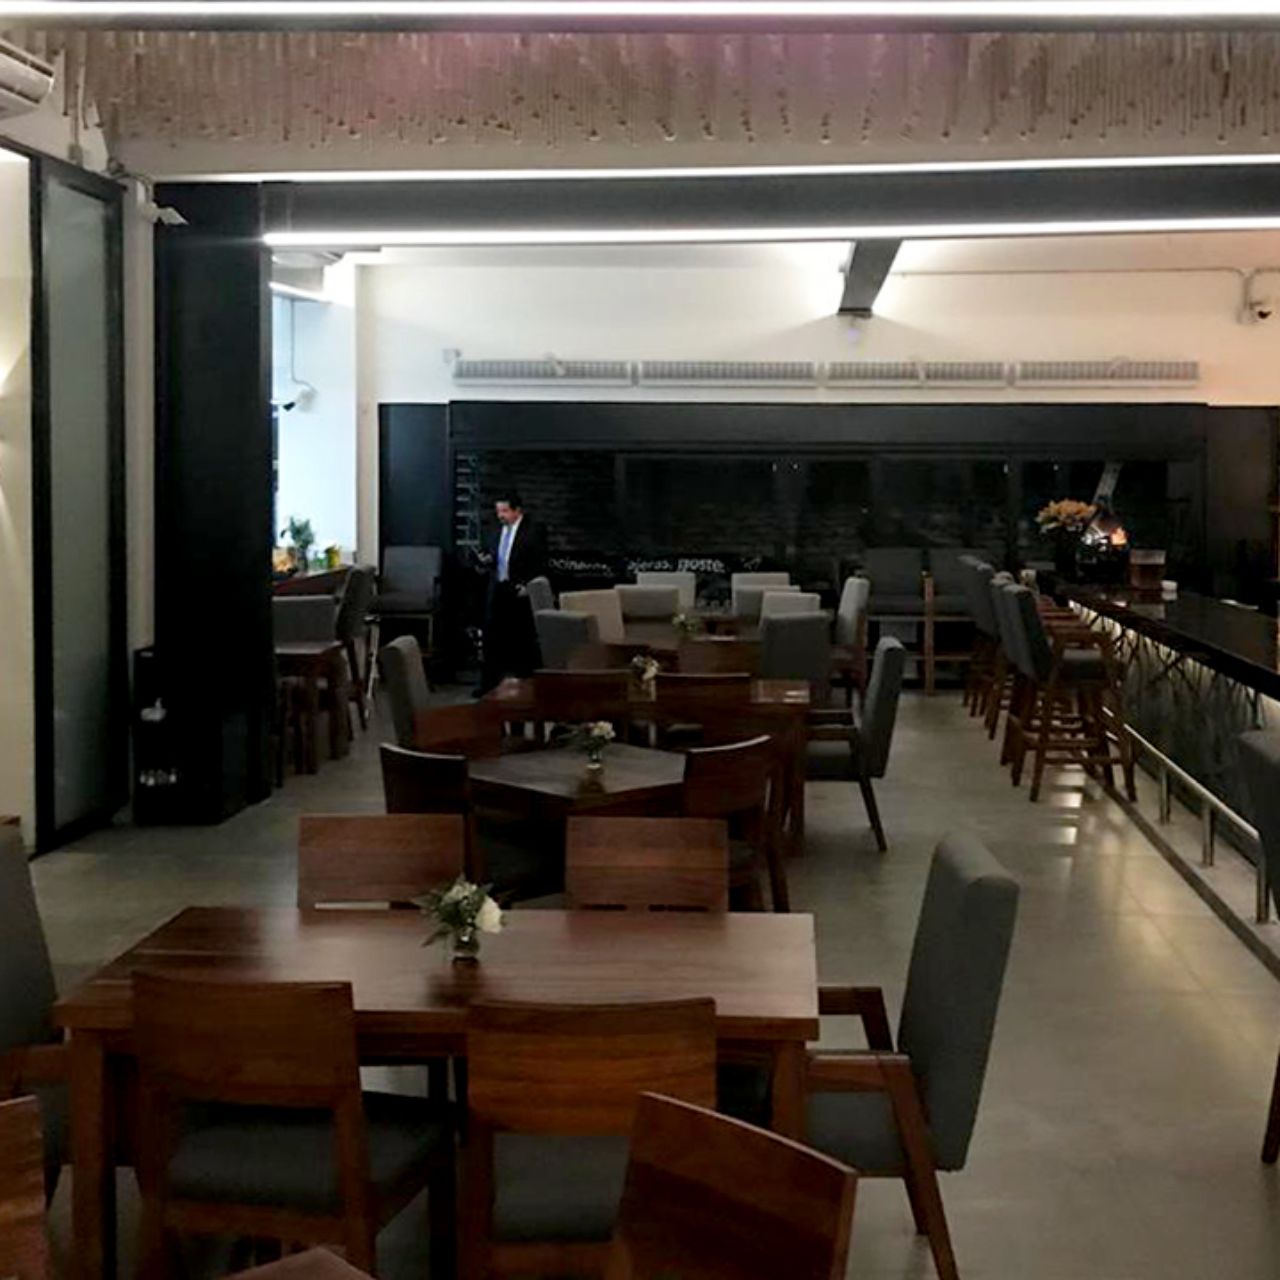 Frarsa - Guadalajara Restaurant - Guadalajara, JAL | OpenTable